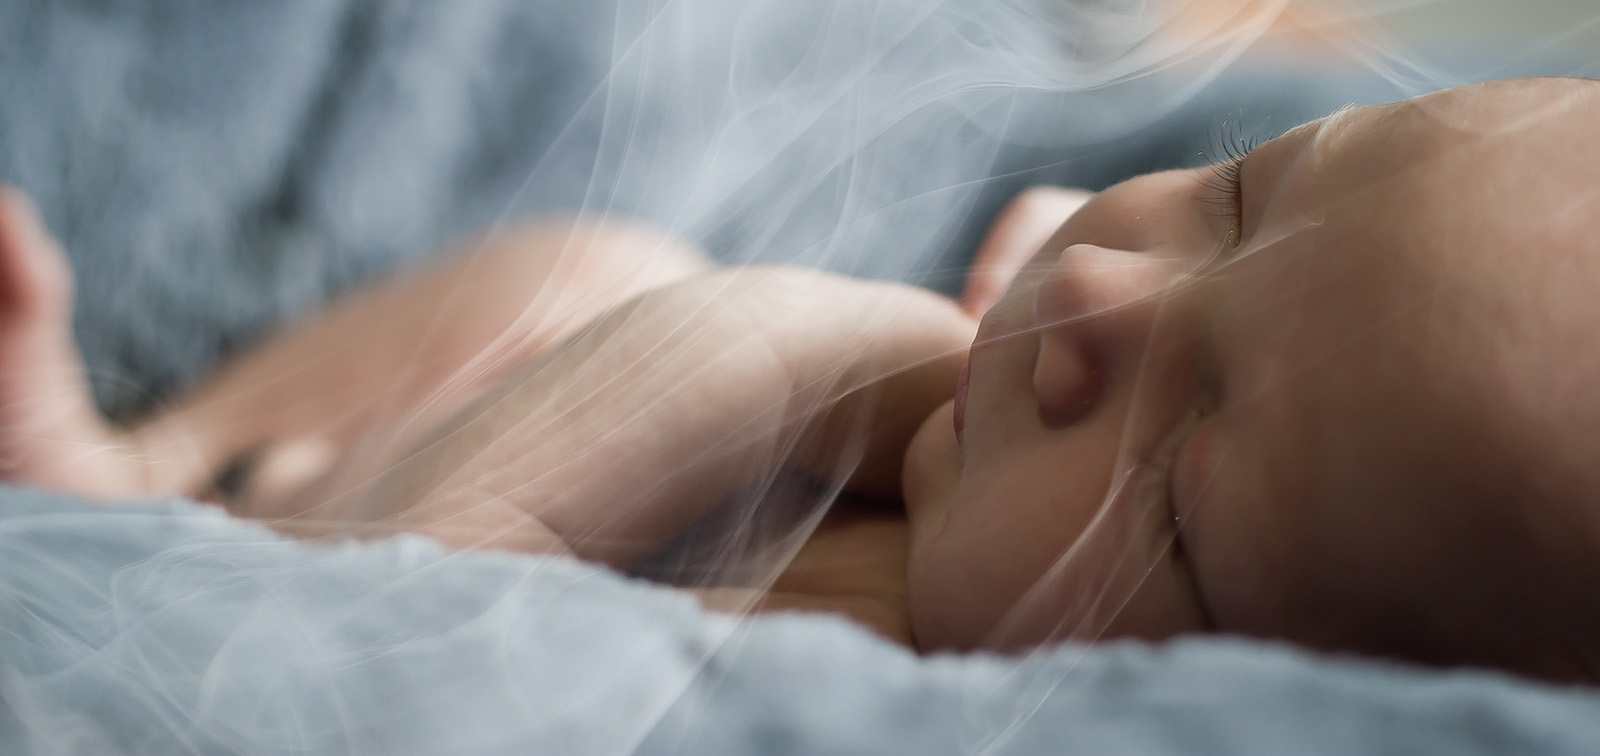 Un nadó respira el fum del tabac